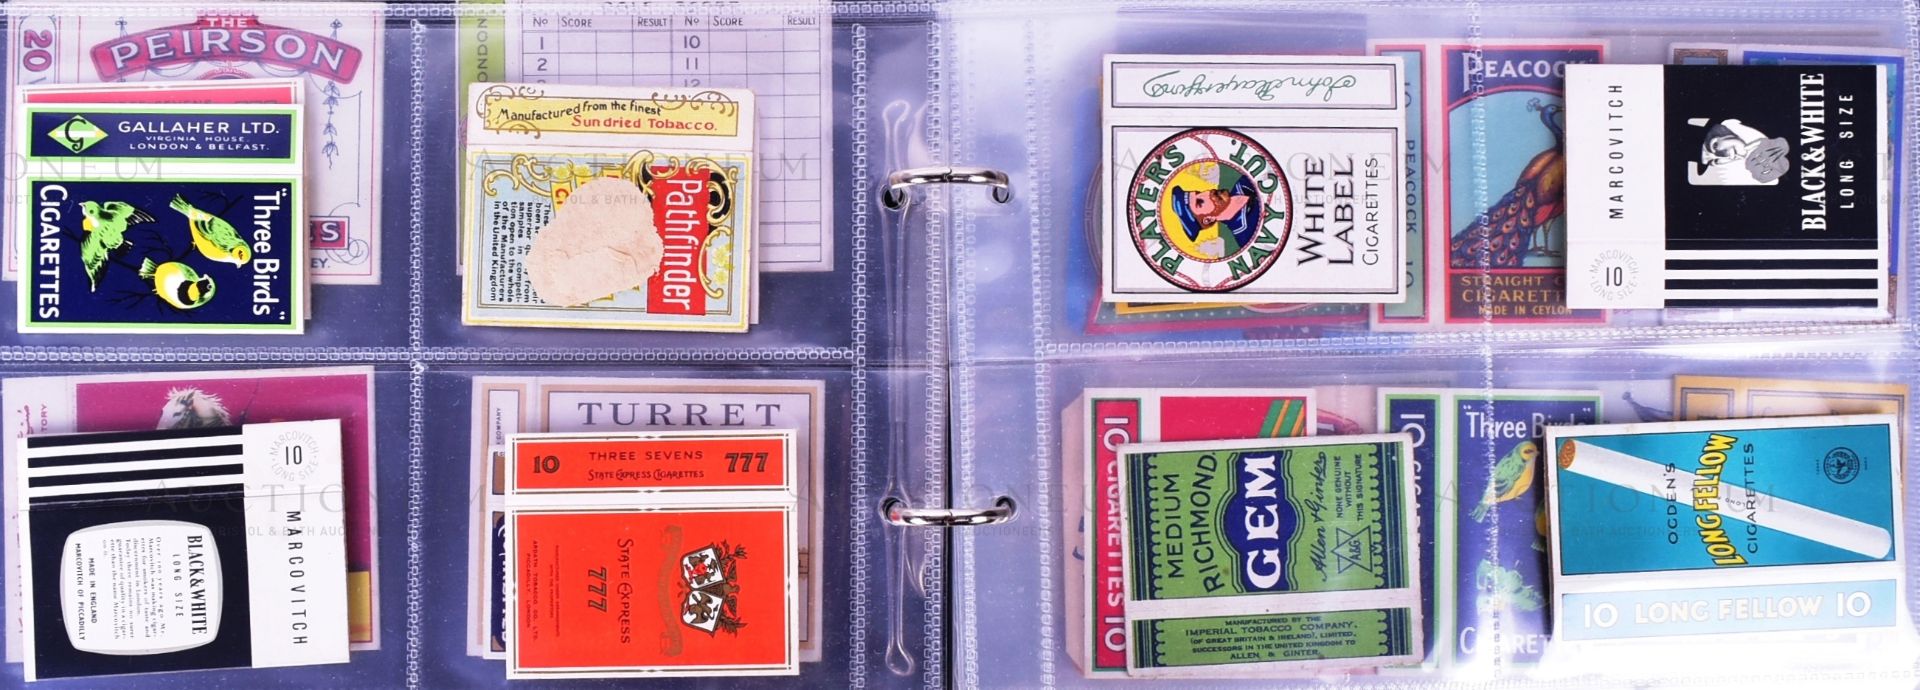 CIGARETTE PACKETS - ALBUM OF VINTAGE CIGARETTE PACKS - Bild 5 aus 16